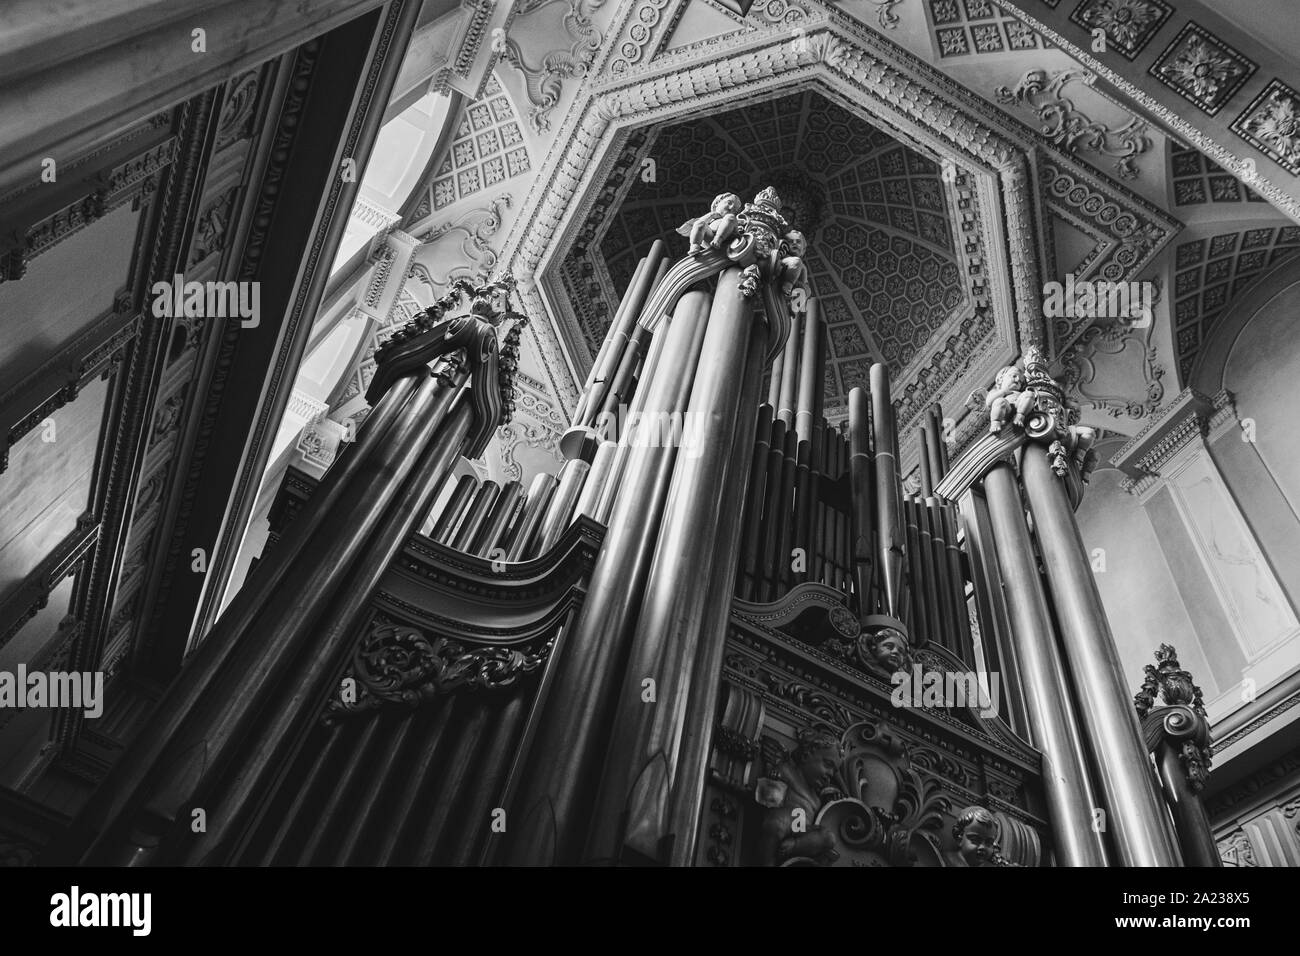 Cercando un il Blenheim Palace organo nella sala lunga. Fu qui che Maurizio Cattelan il famoso 18 carot Golden wc presentano arte è stato rubato. Foto Stock